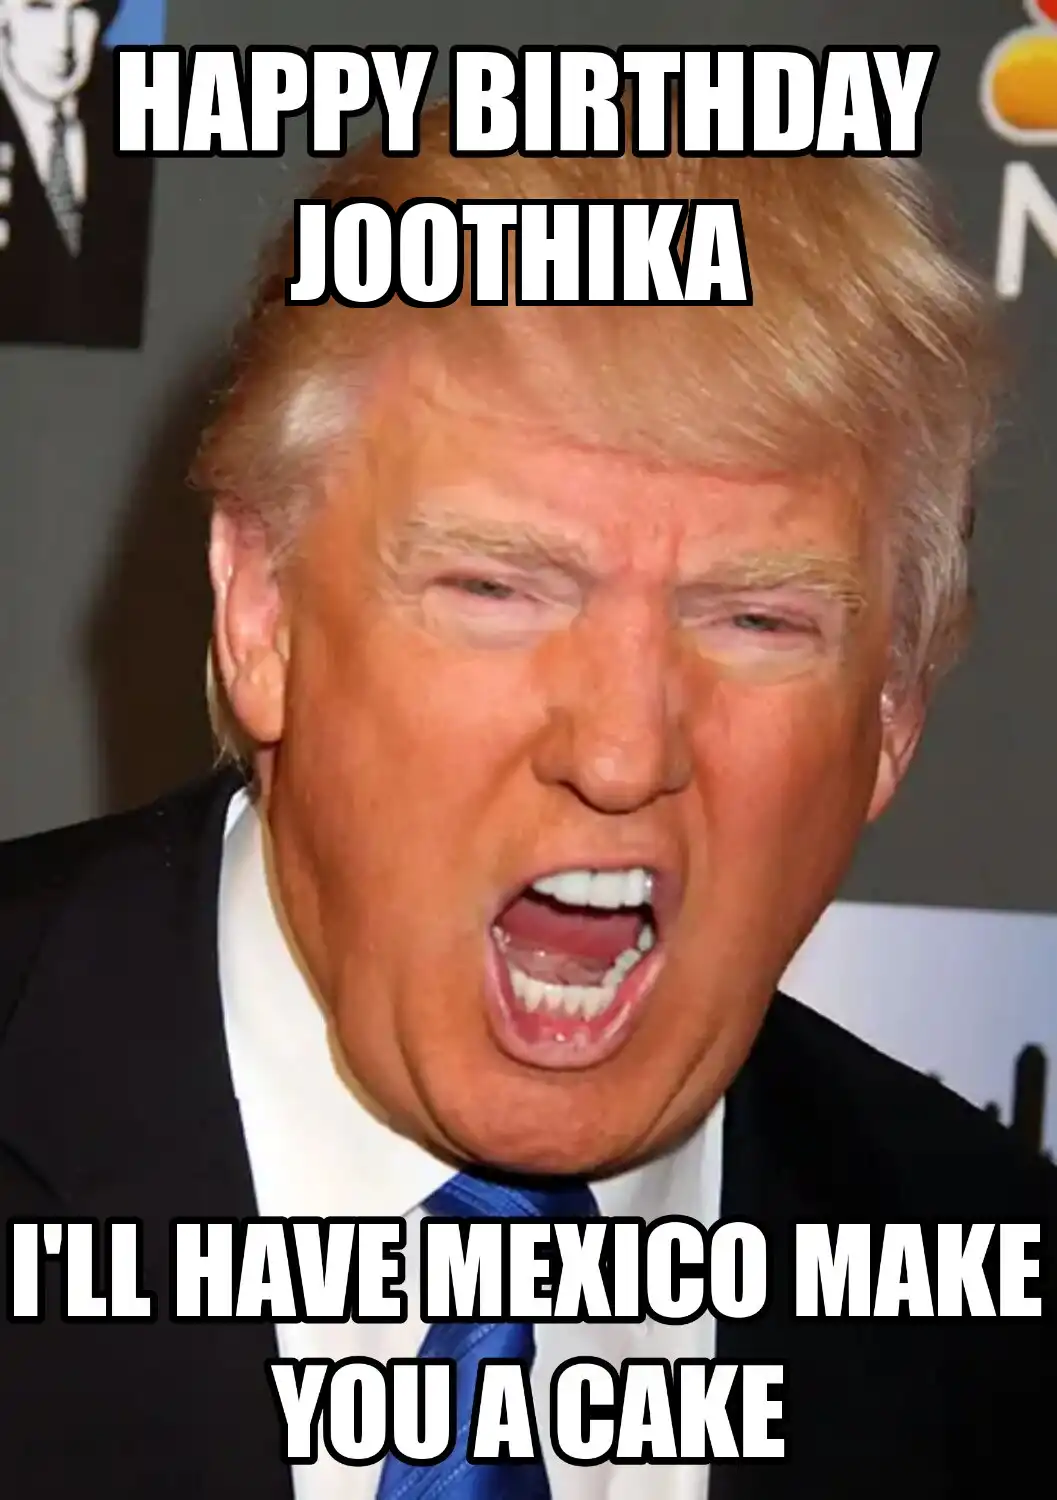 Happy Birthday Joothika Mexico Make You A Cake Meme